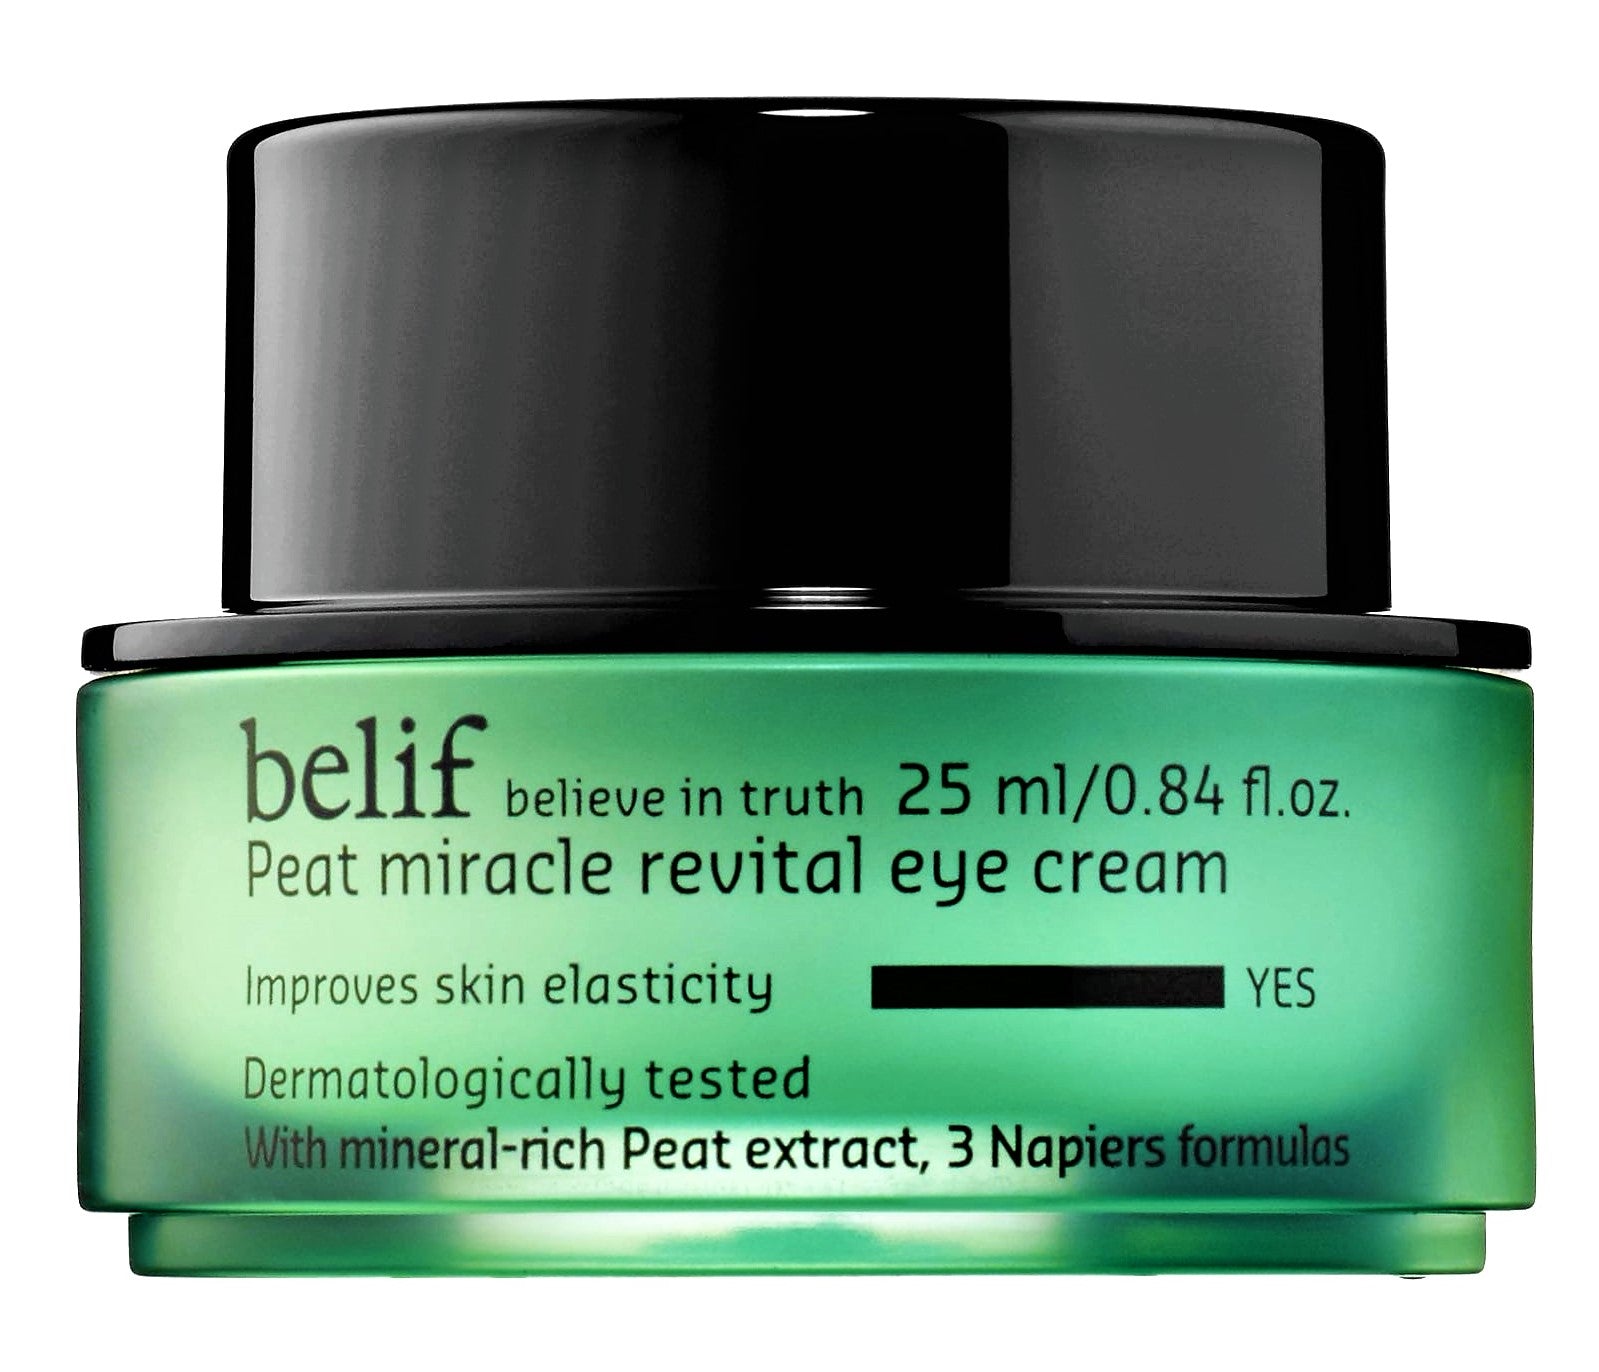 belif Peat Miracle Revital Eye Cream - 25 ml